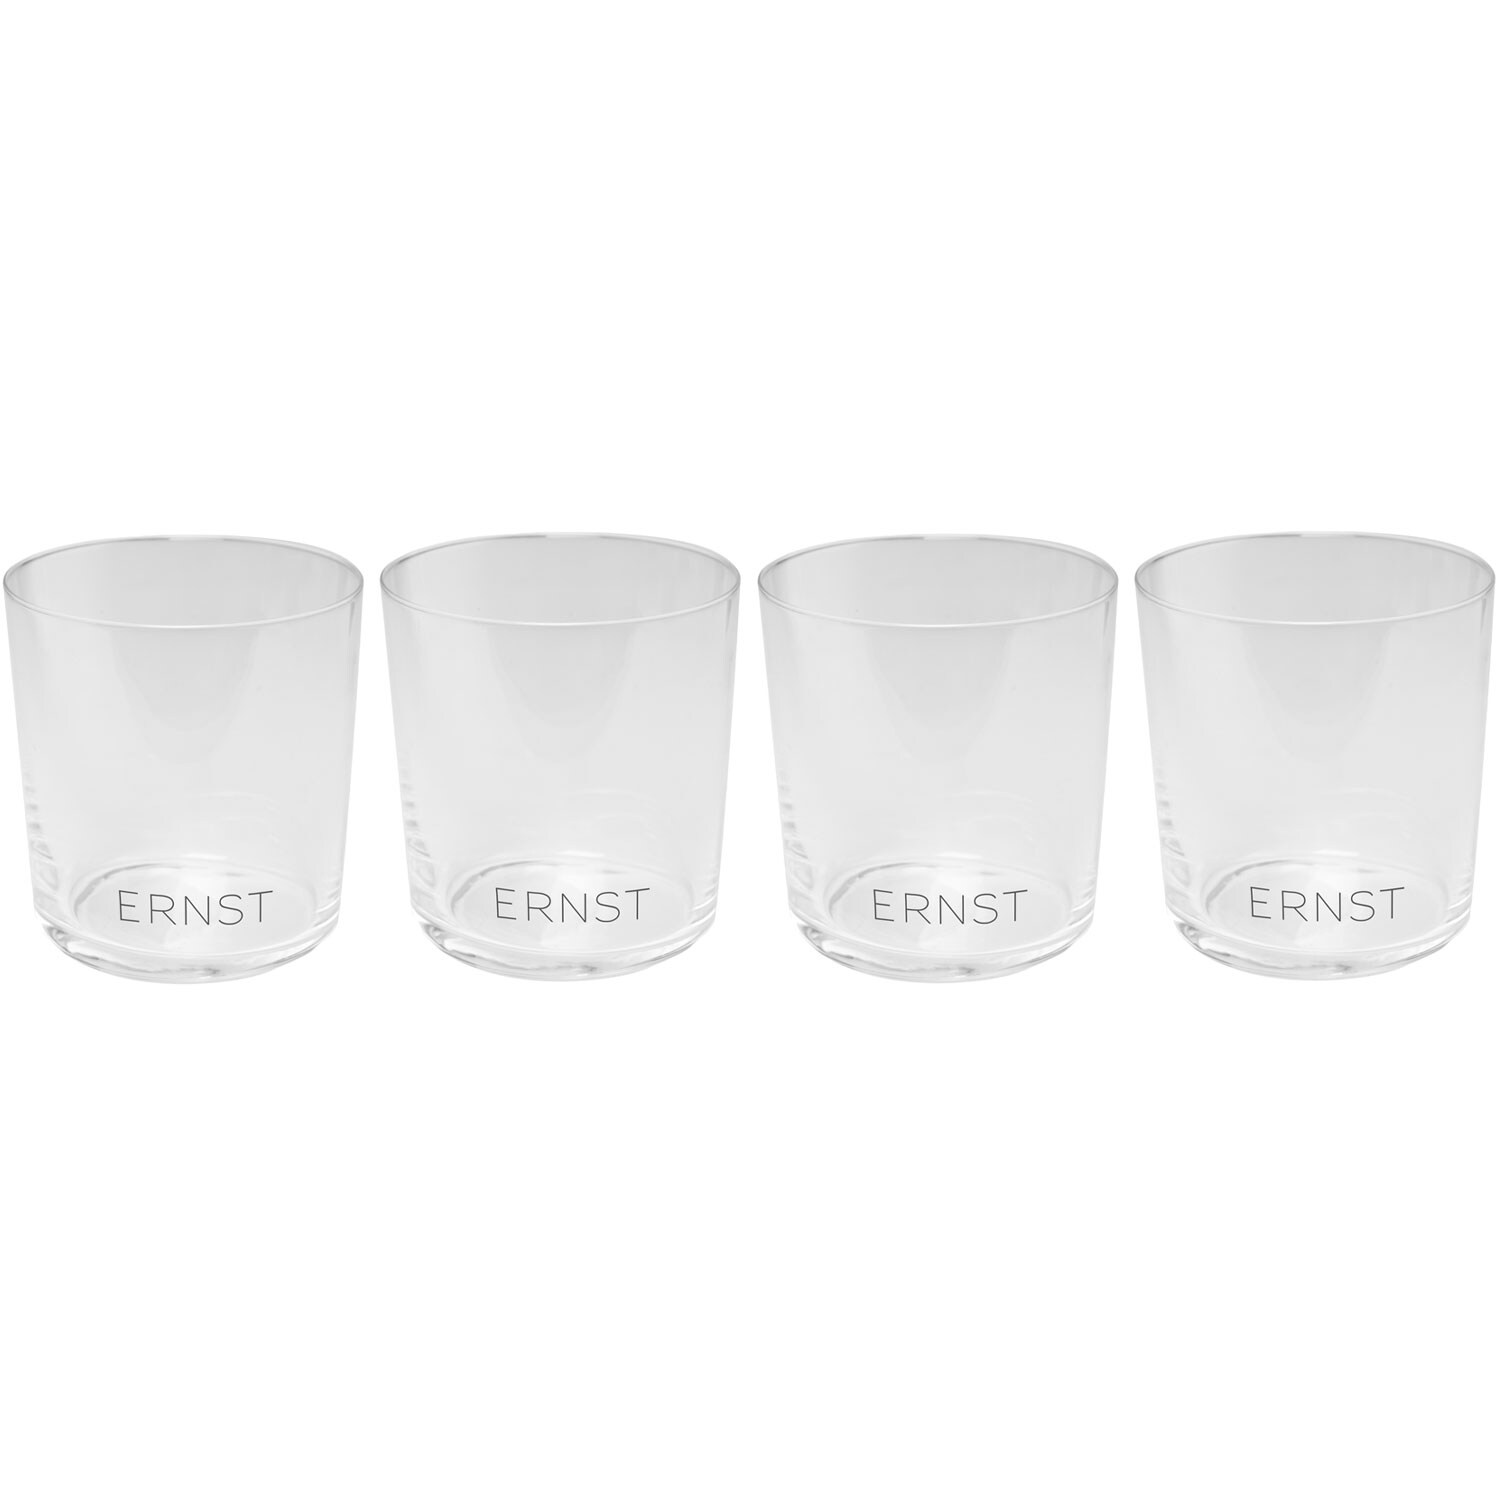 https://royaldesign.com/image/11/ernst-ernst-drinking-glass-4-pack-2